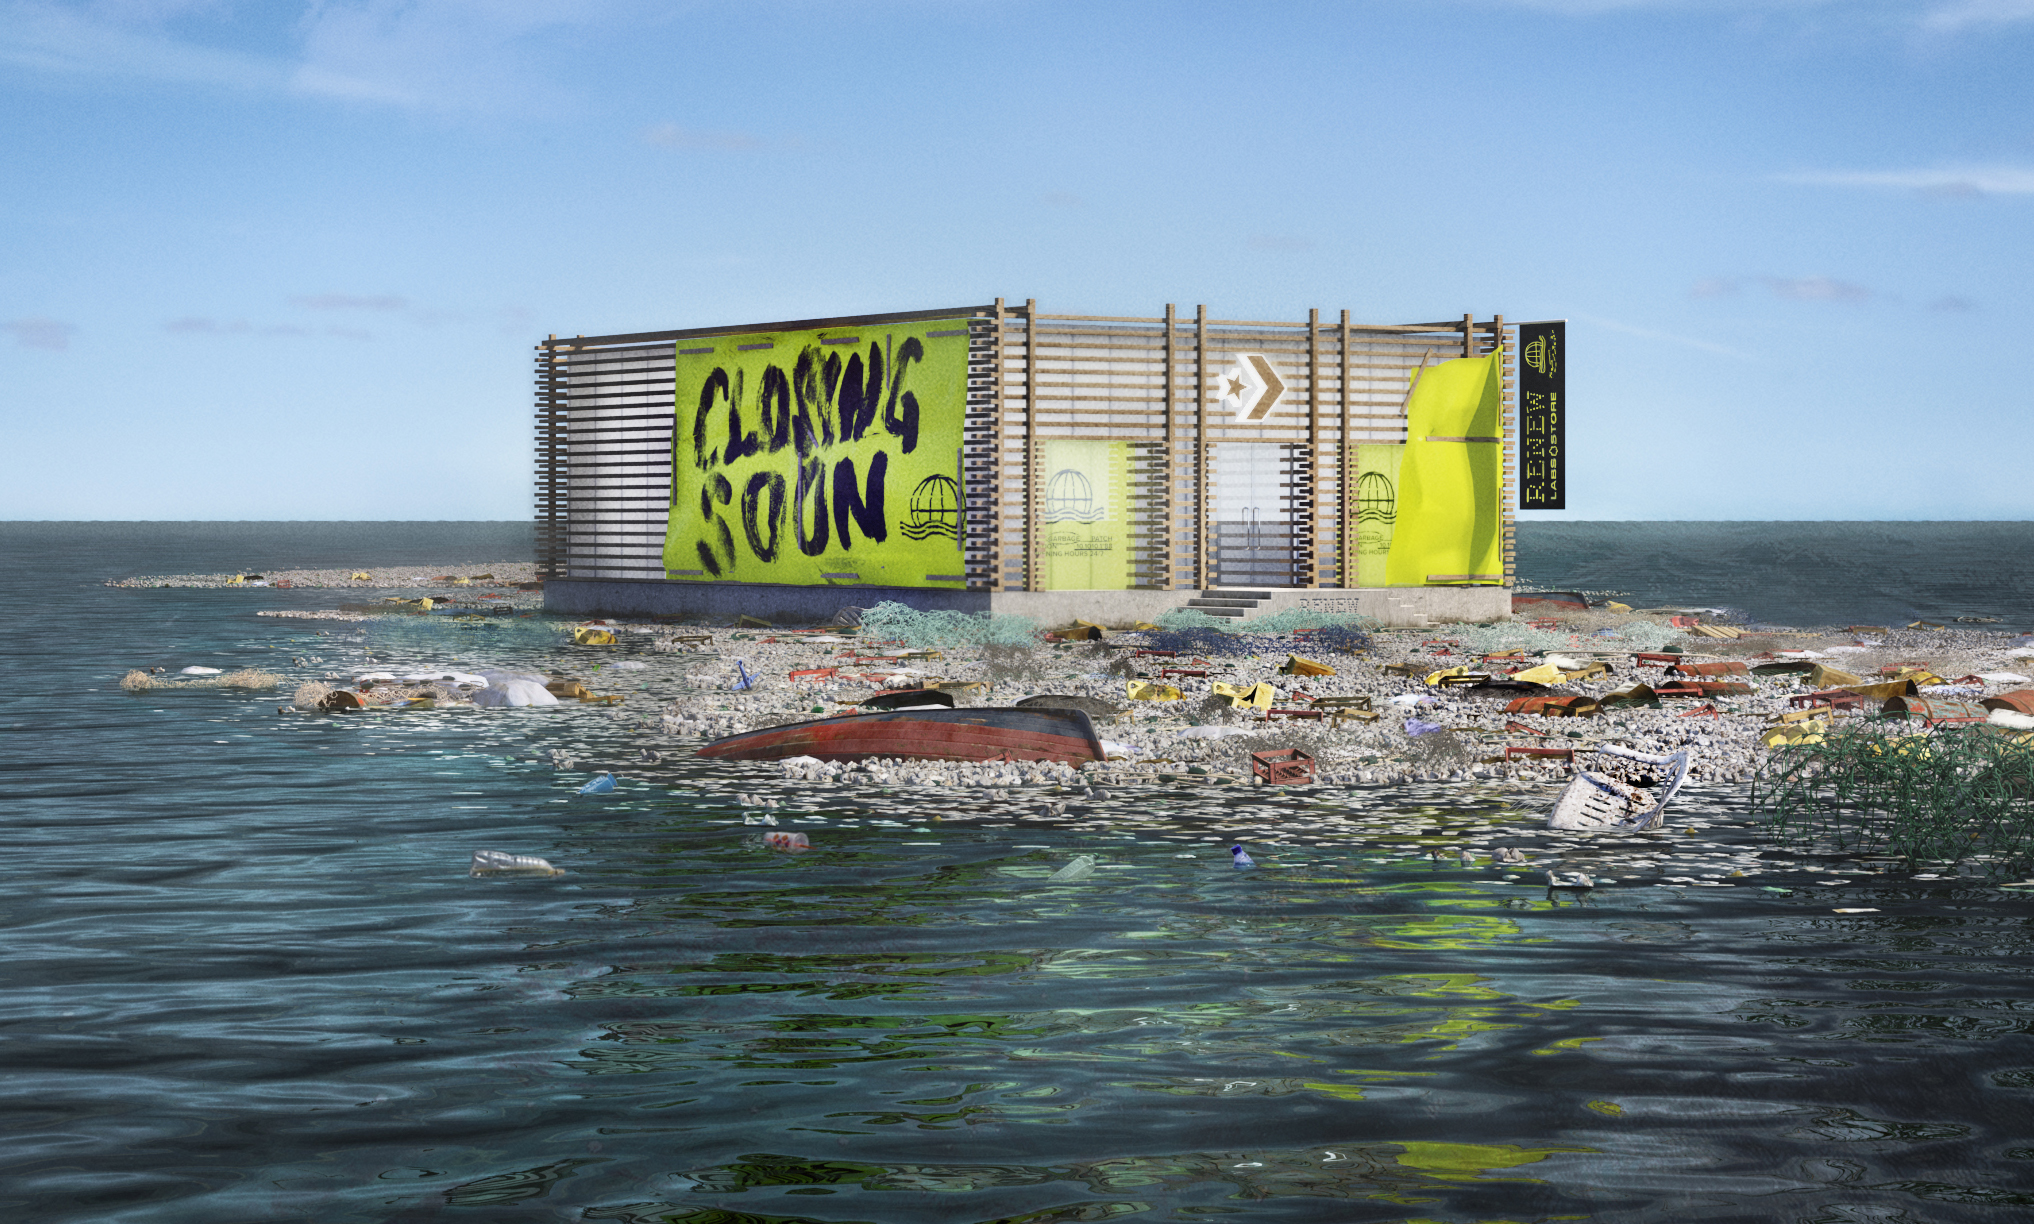 Społeczność Converse All Stars otwiera pierwszy wirtualny sklep na oceanicznym wysypisku śmieci